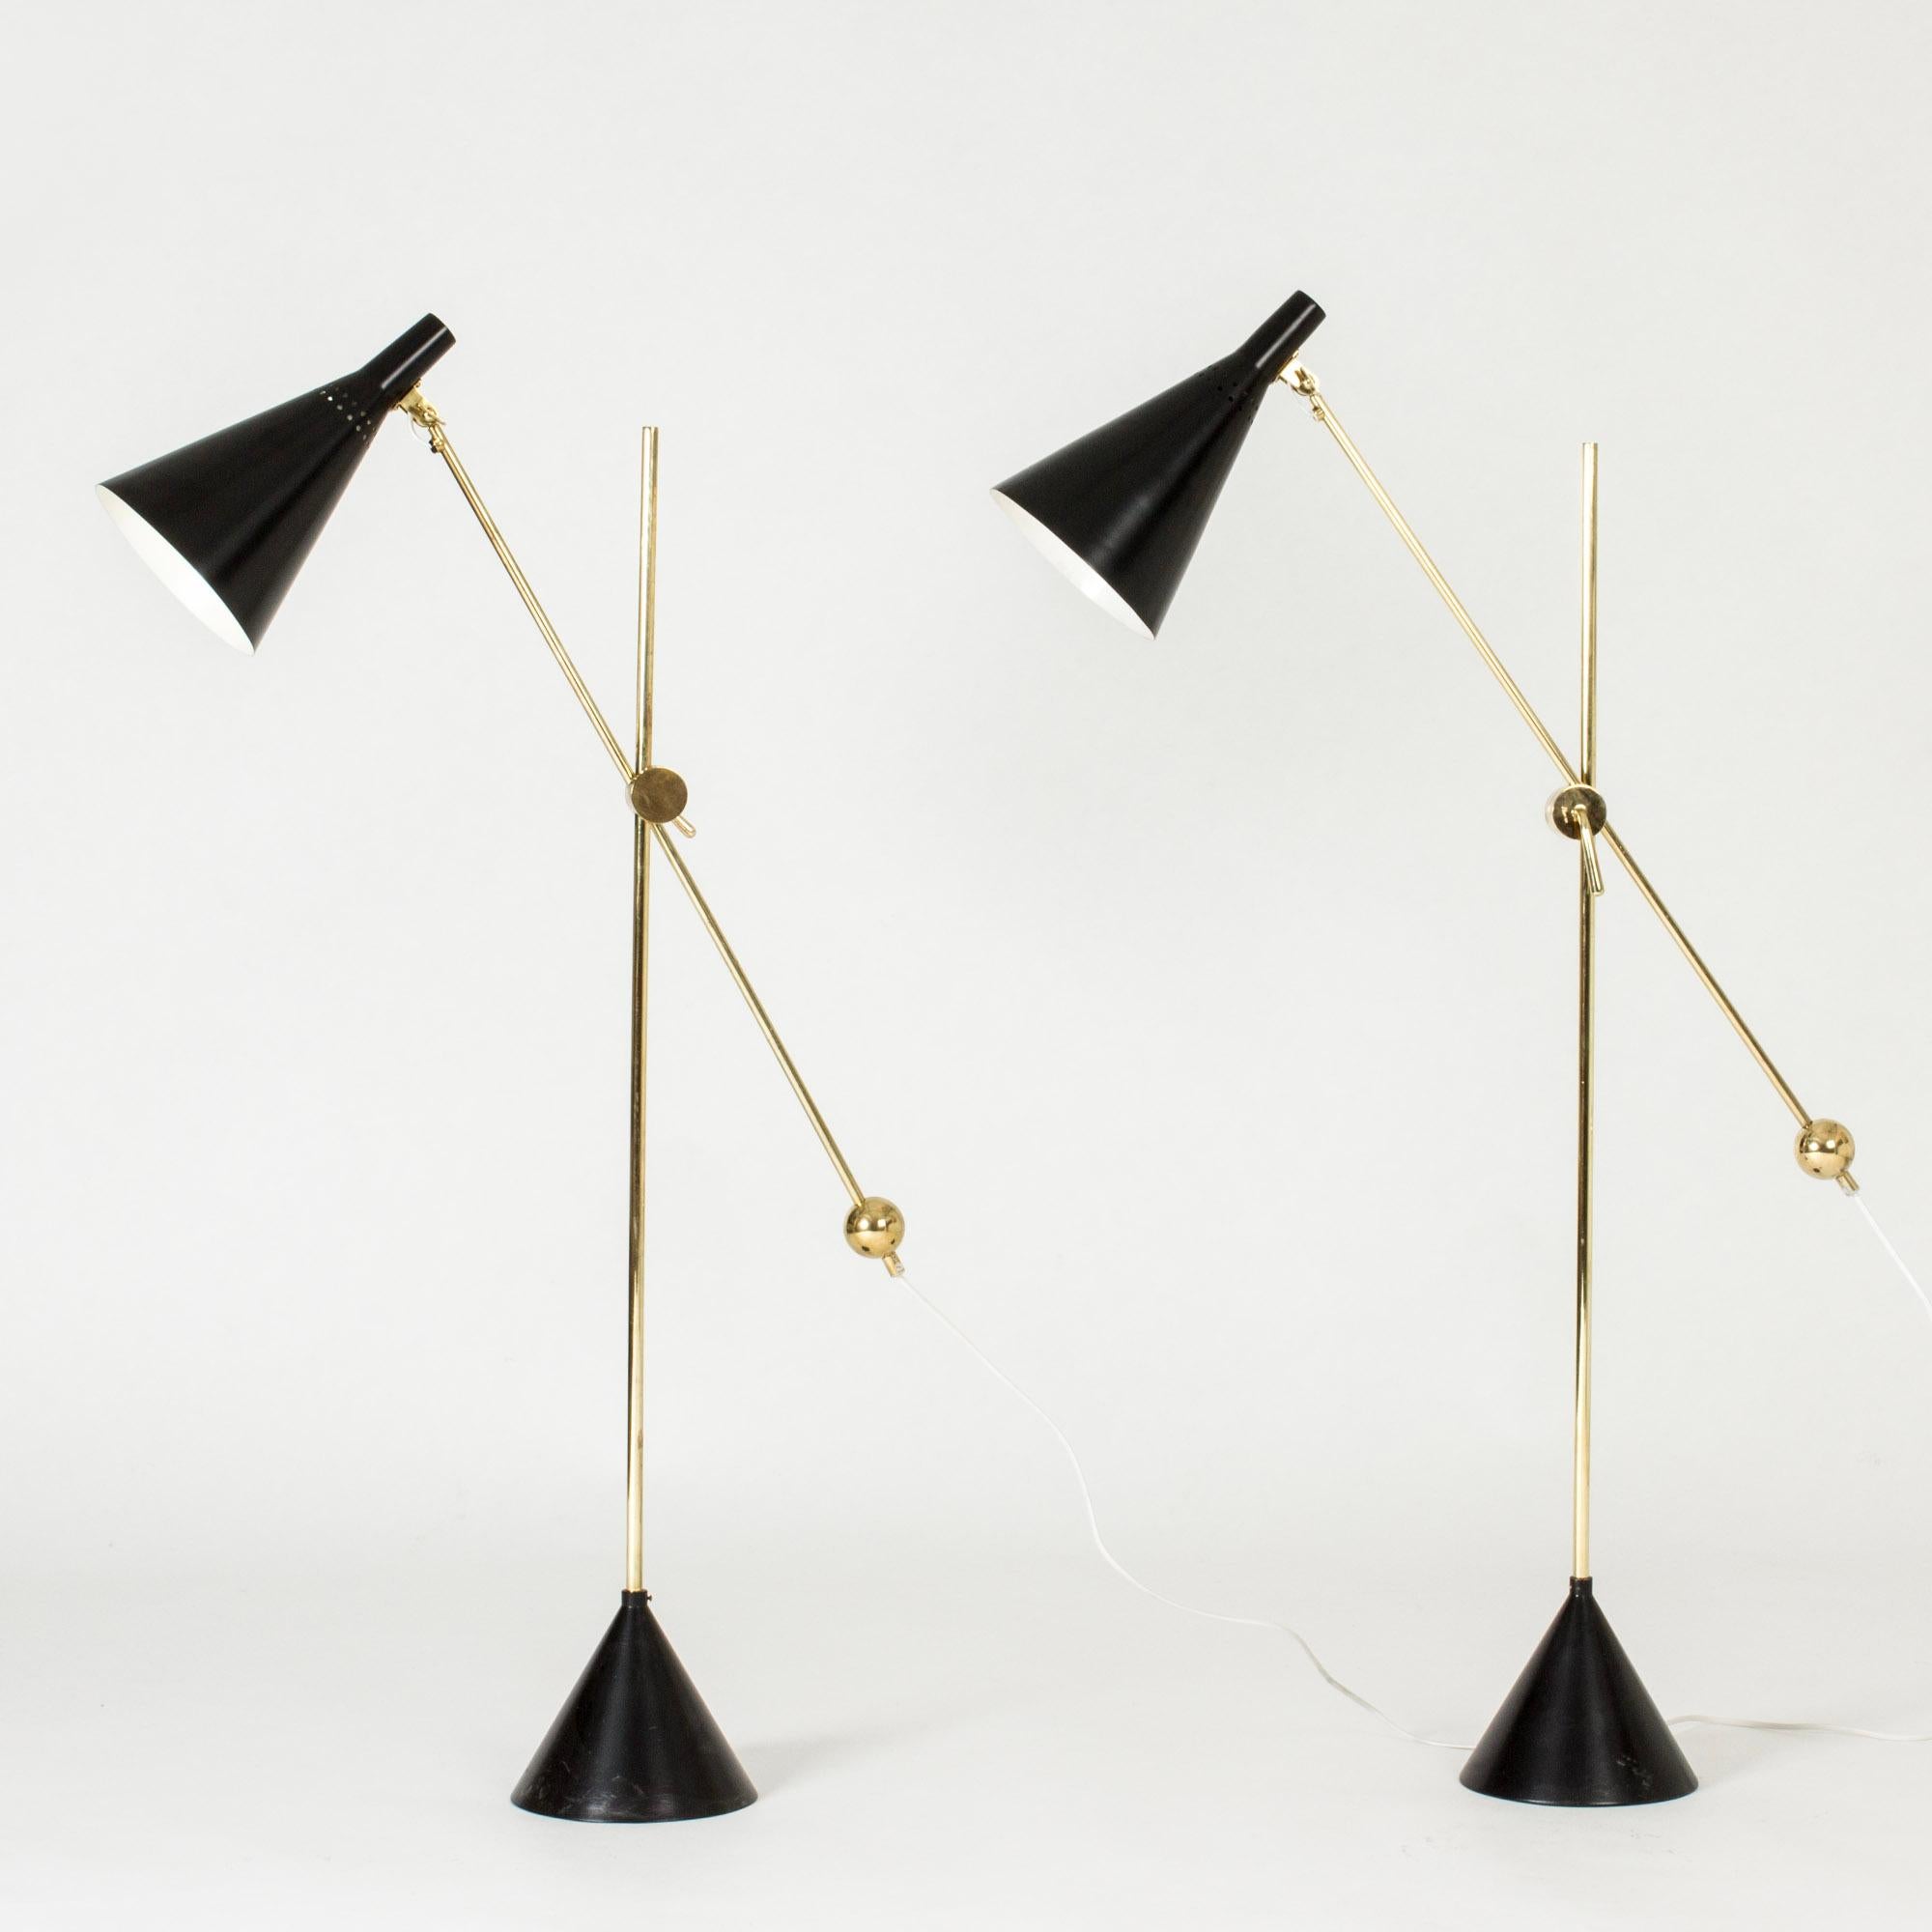 Erstaunliches Paar Stehlampen von Tapio Wirkkala, hergestellt aus Messing und schwarz lackiertem Metall. Schöne dekorative Messingdetails und ein raffinierter Mechanismus zum Verstellen der Höhe und des Winkels der Schirme. Konische Böden.